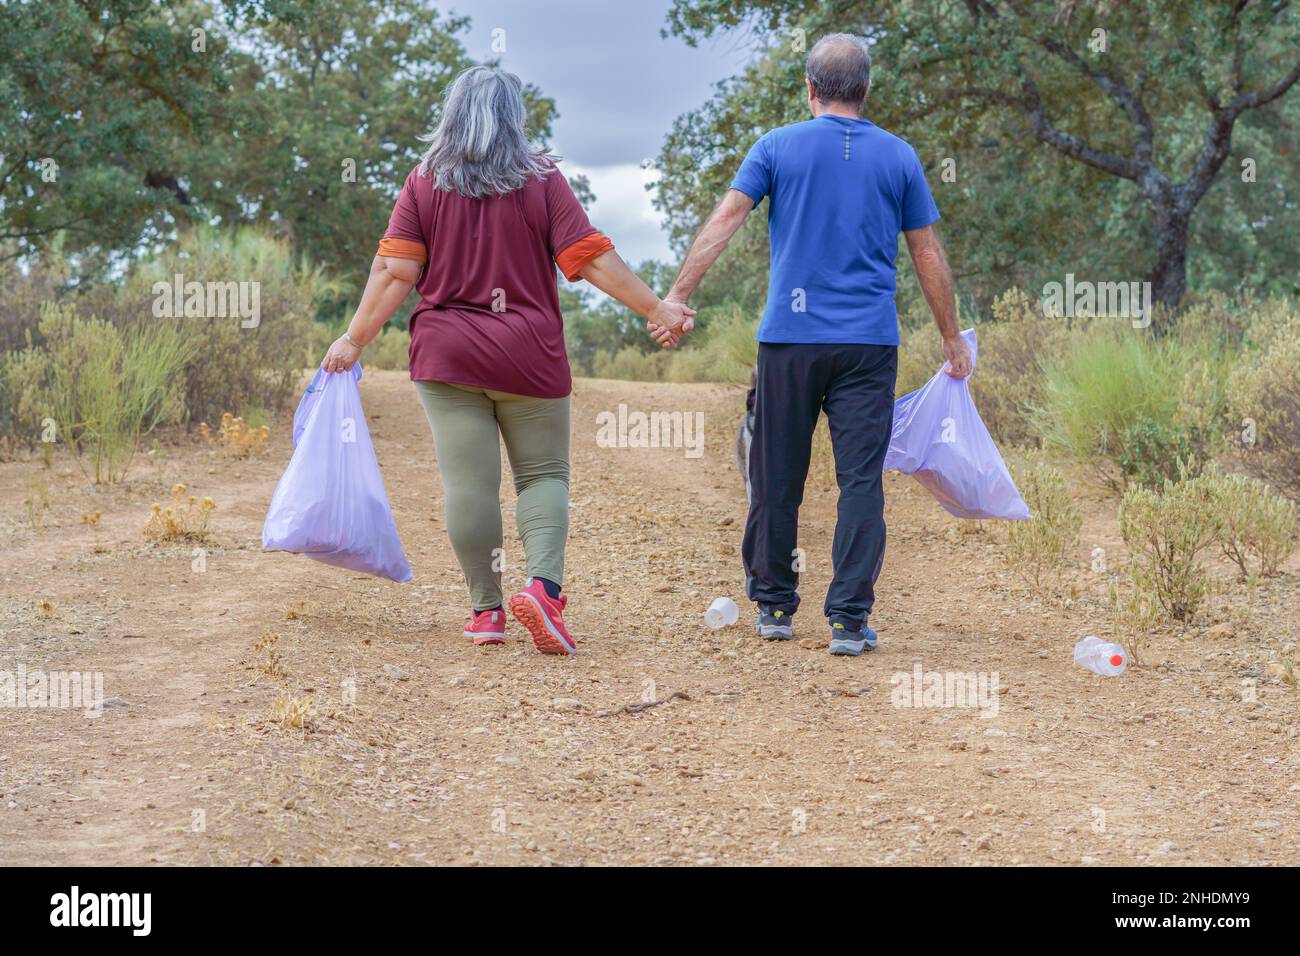 Un par de ambientalistas con bolsas de basura caminando de la mano por un camino lleno de basura Stock Photo